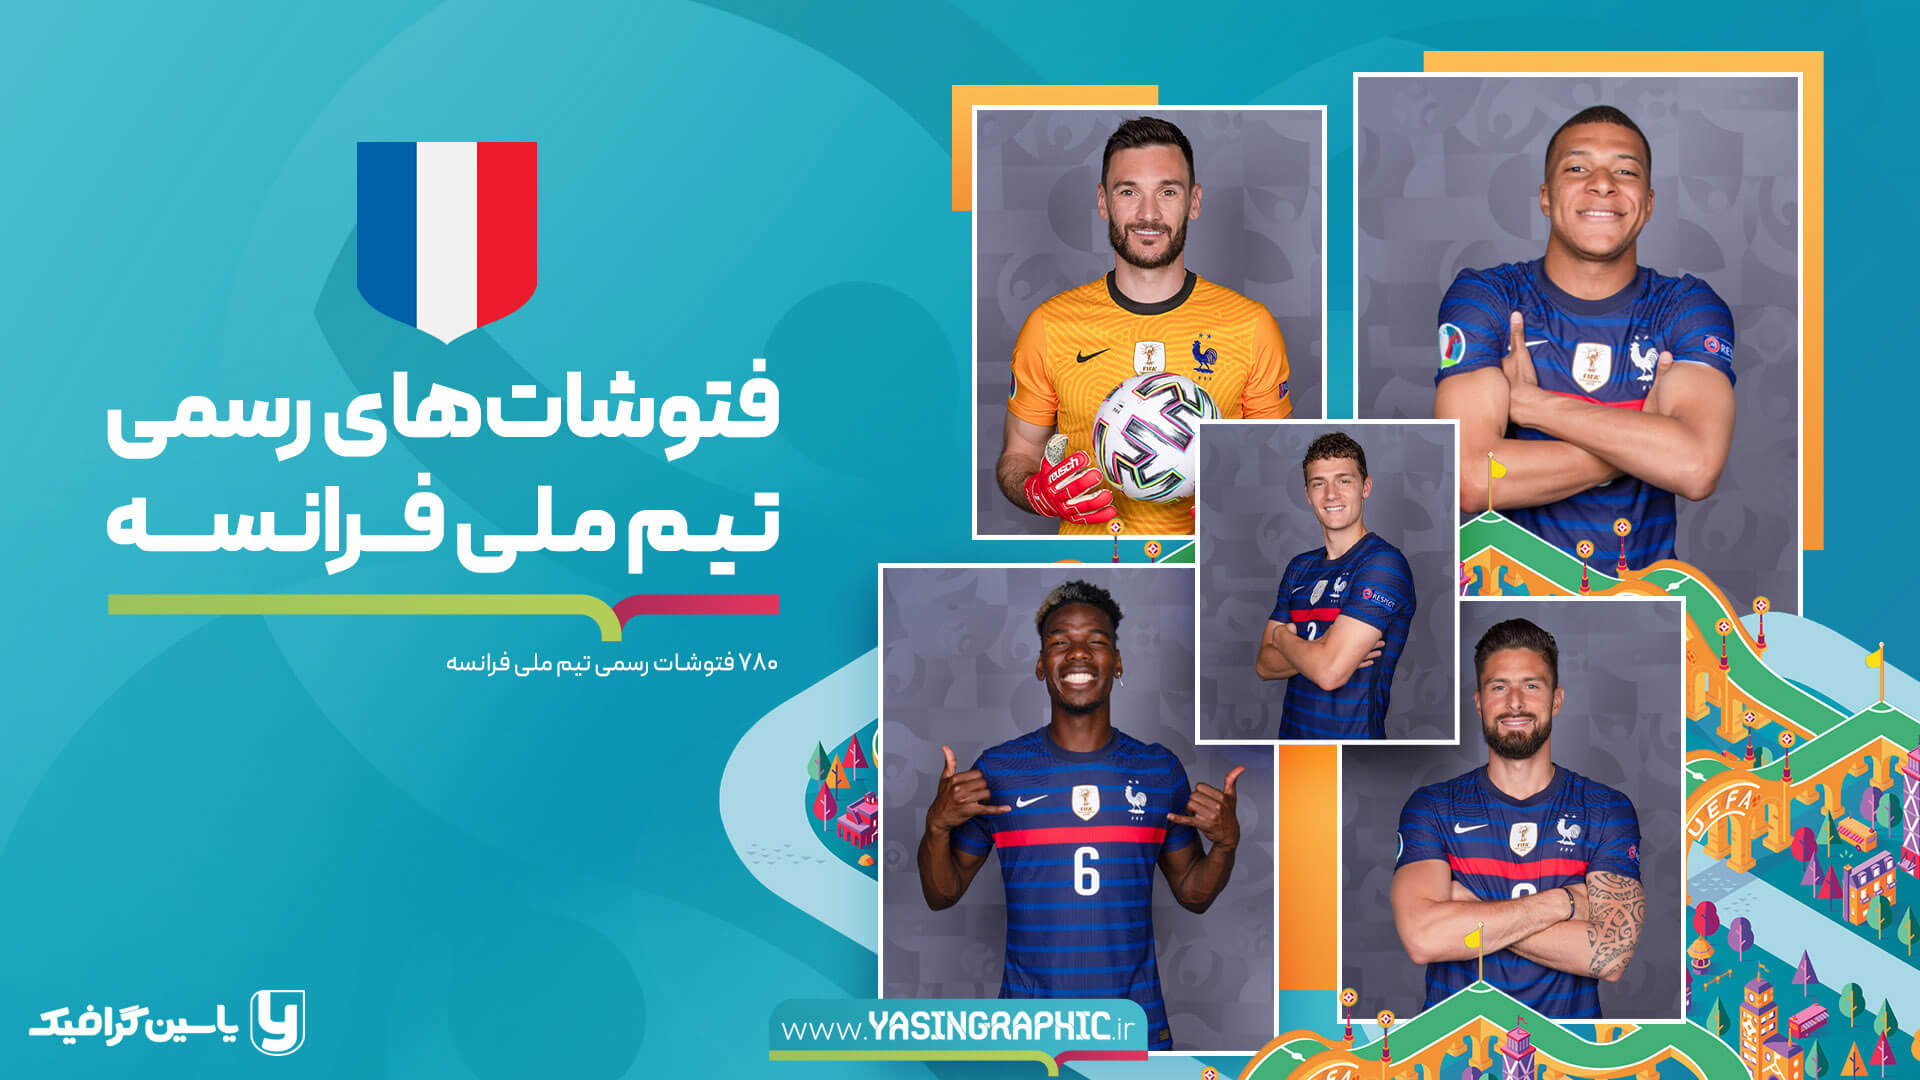 فتوشات های تیم ملی فرانسه - یورو 2020